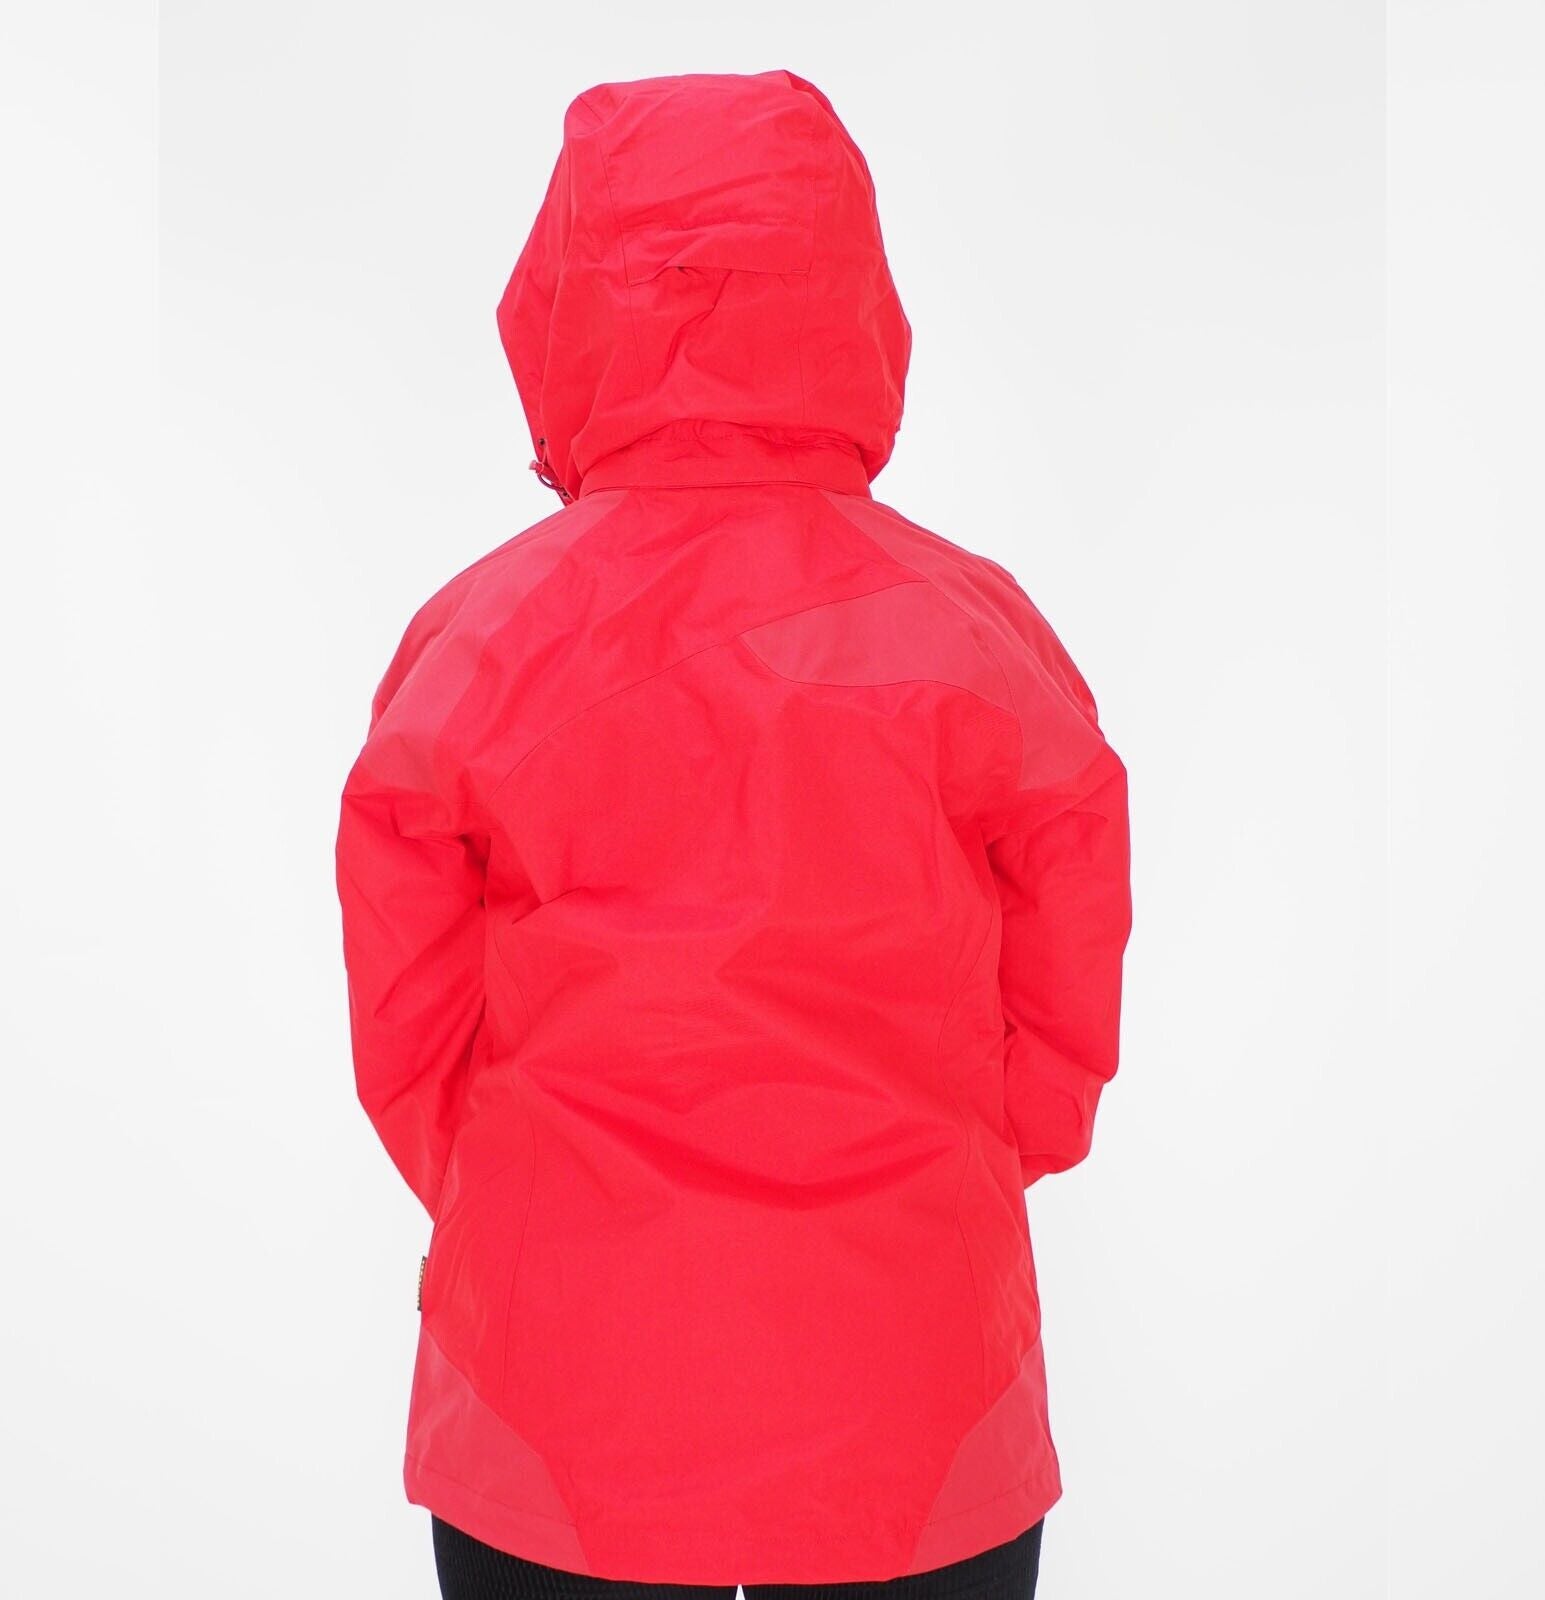 Womens Jack Wolfskin Jasper 1106221 Red Fire Waterproof Hooded Hiking Jacket